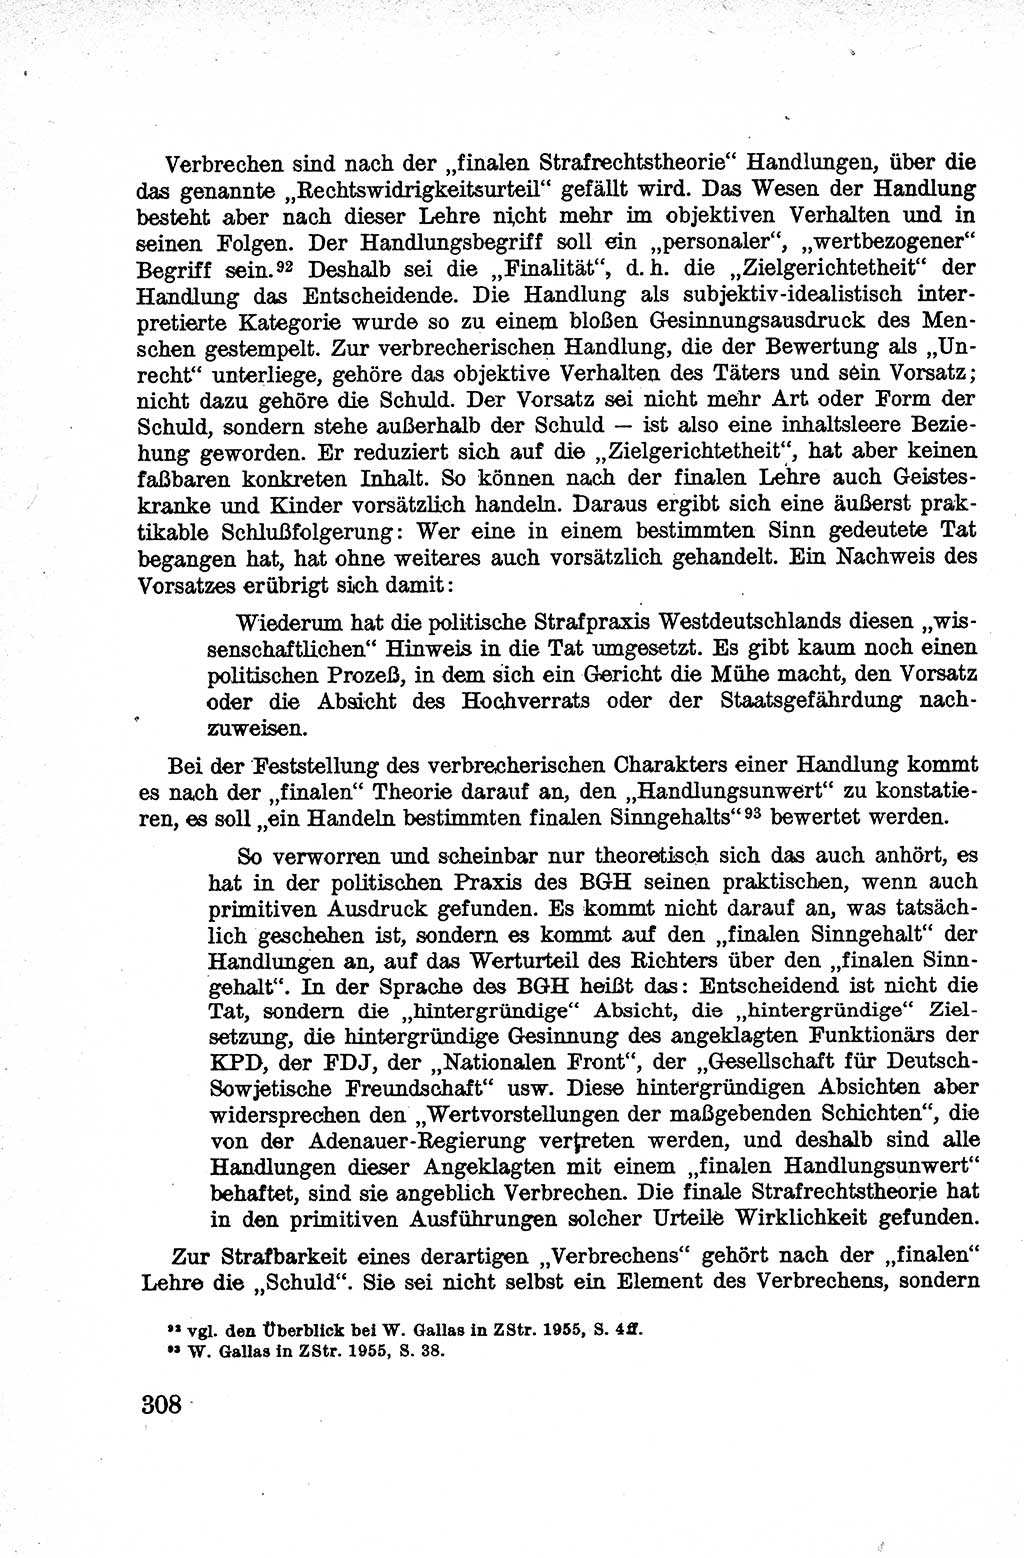 Lehrbuch des Strafrechts der Deutschen Demokratischen Republik (DDR), Allgemeiner Teil 1959, Seite 308 (Lb. Strafr. DDR AT 1959, S. 308)